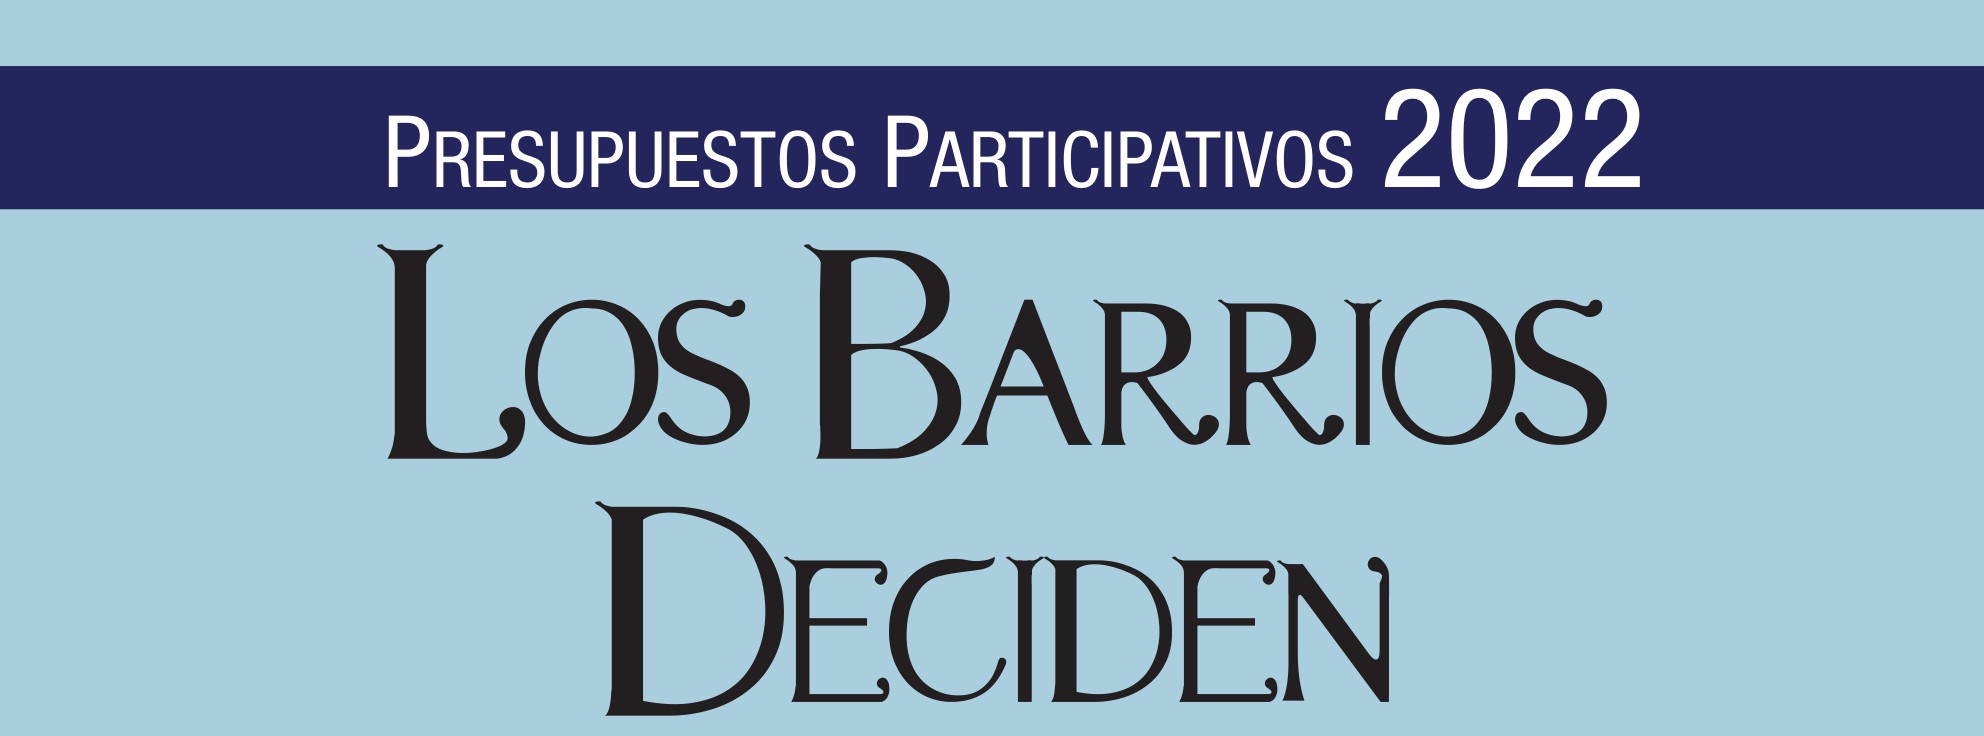 Imagen de la noticia Presupuestos participativos de Málaga 2022: los barrios deciden